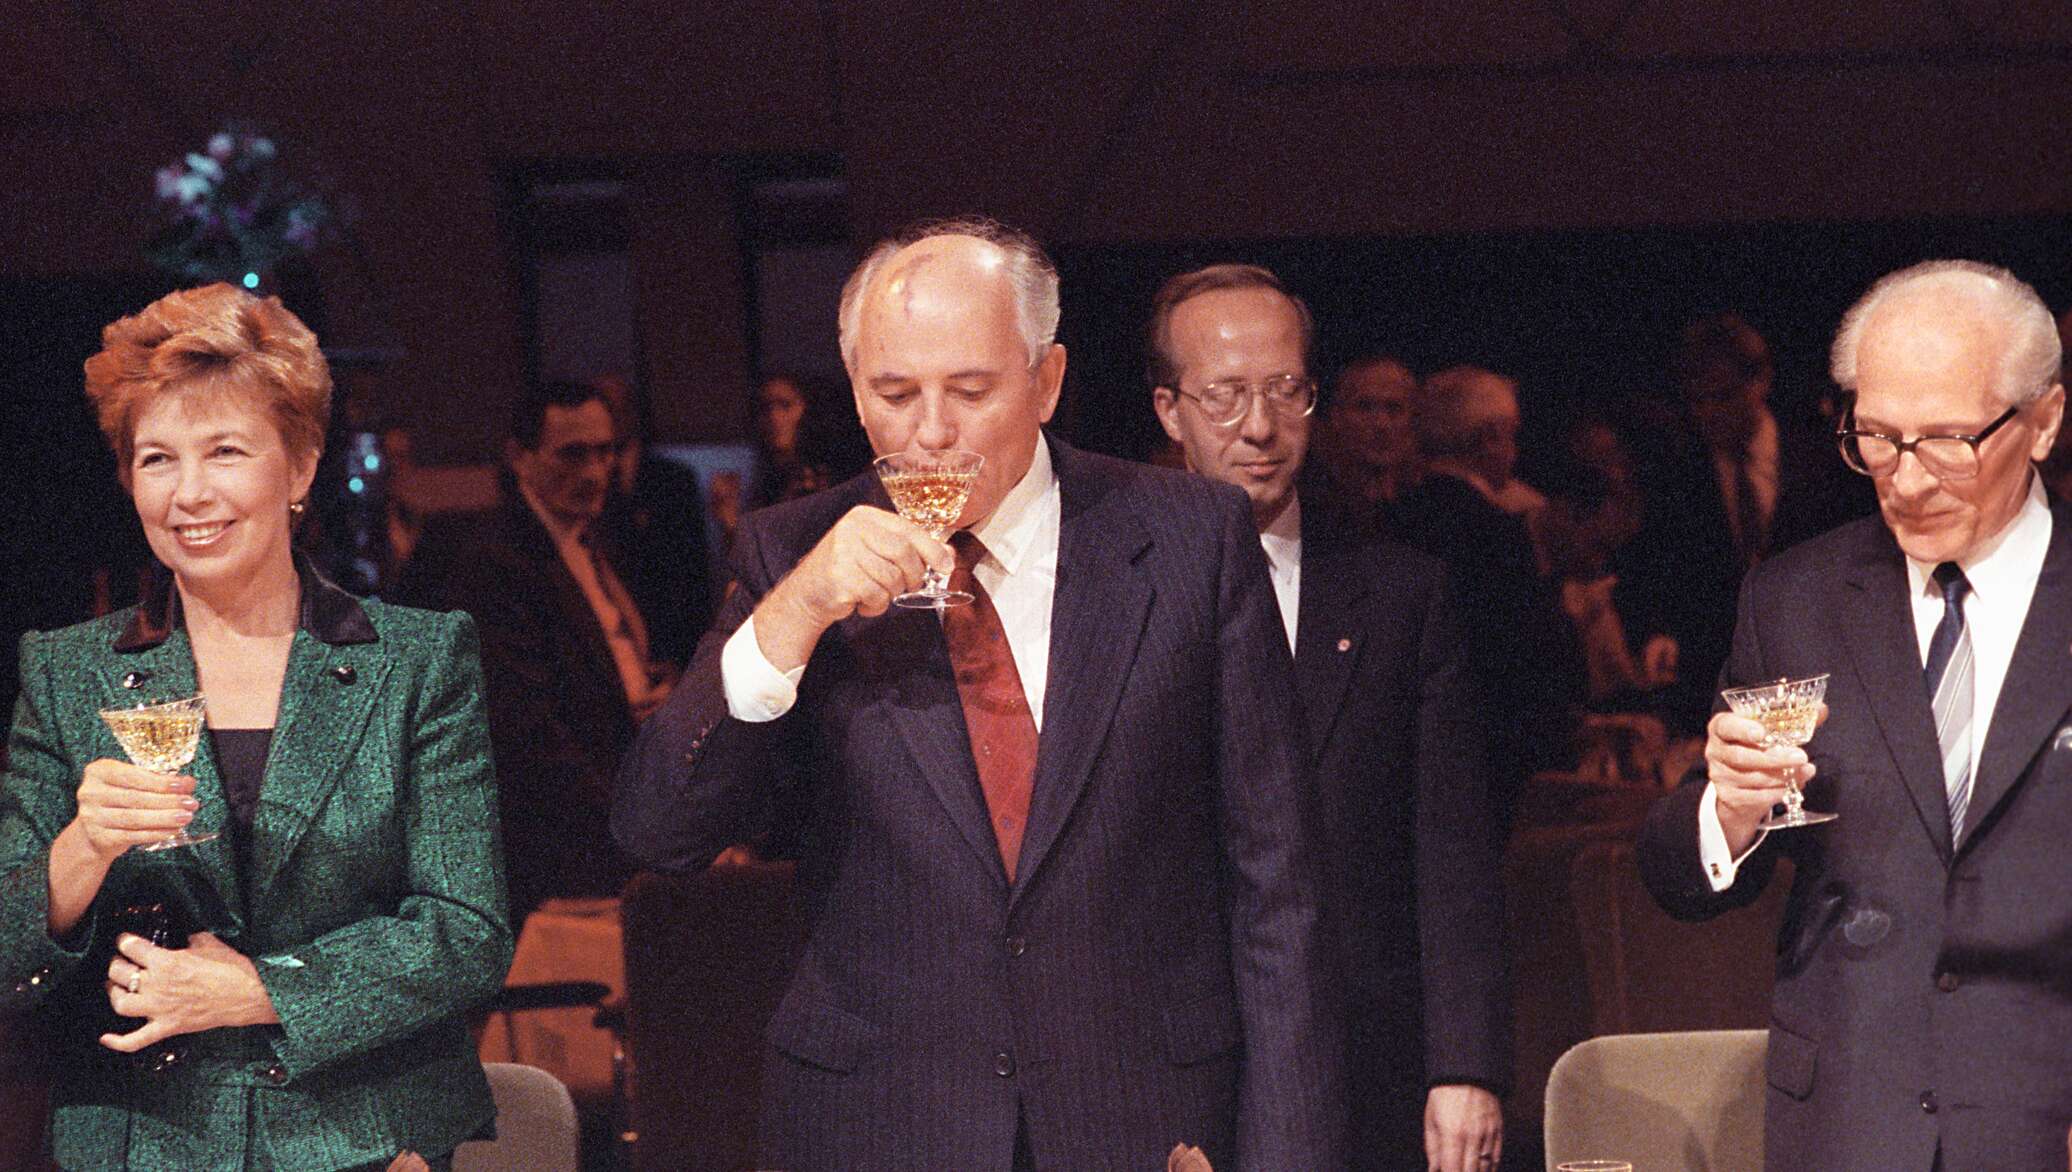 Роль горбачева в гдр кто играет. Горбачев в ГДР. Визит Горбачева в ФРГ 1989.